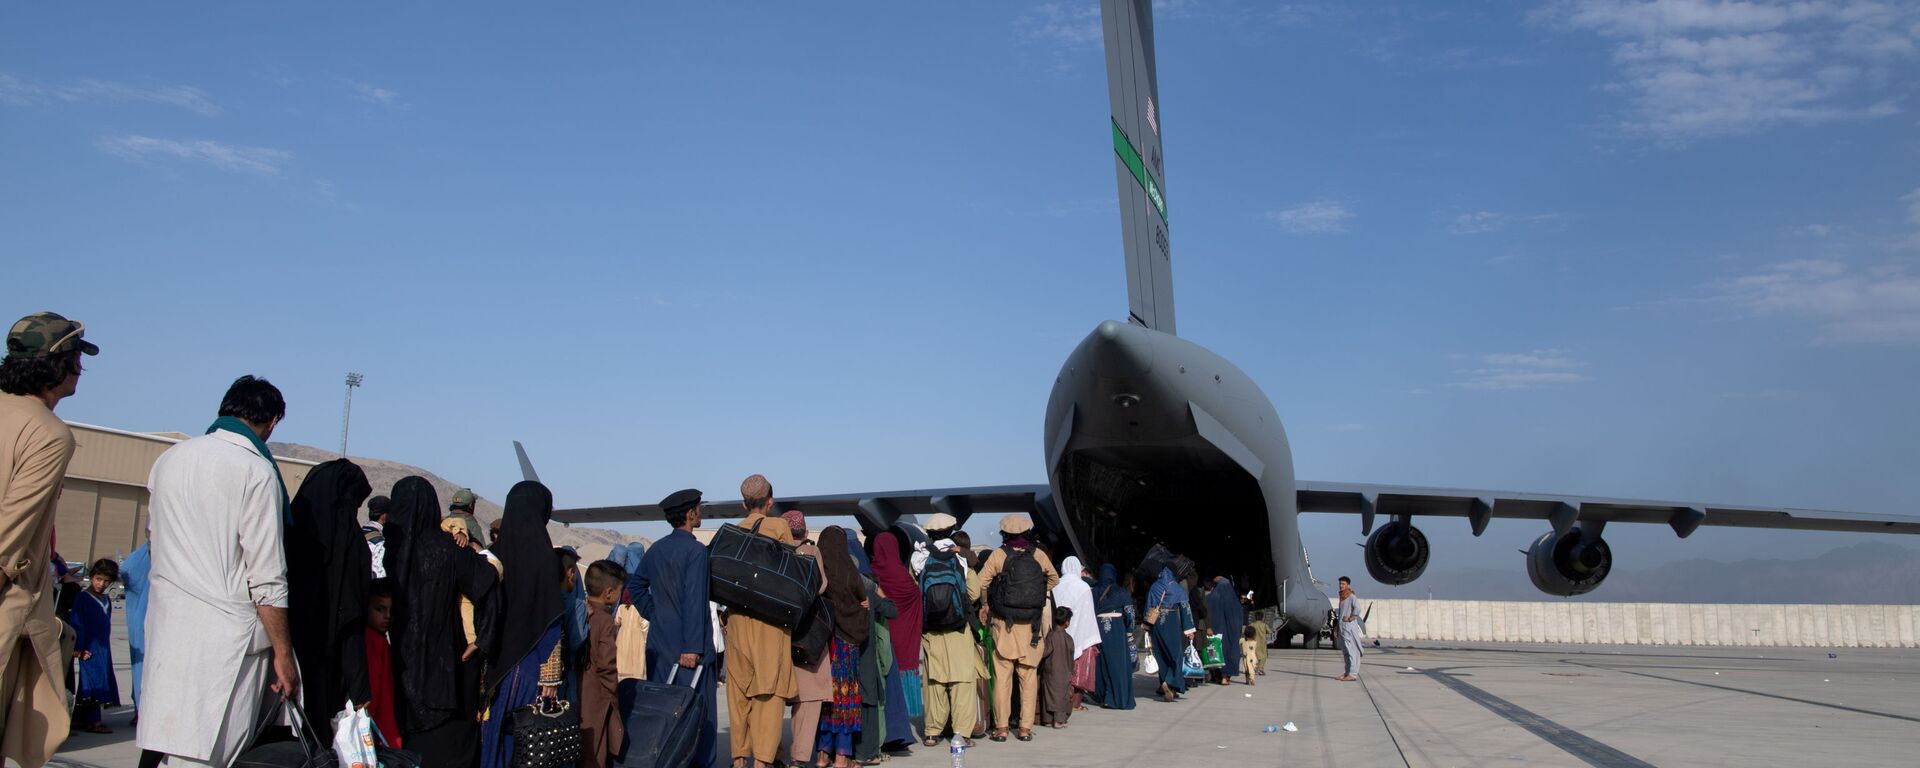 عمليات إجلاء أجانب وأفغان من مطار كابول بعد سيطرة حركة طالبان على الحكم - سبوتنيك عربي, 1920, 27.08.2021